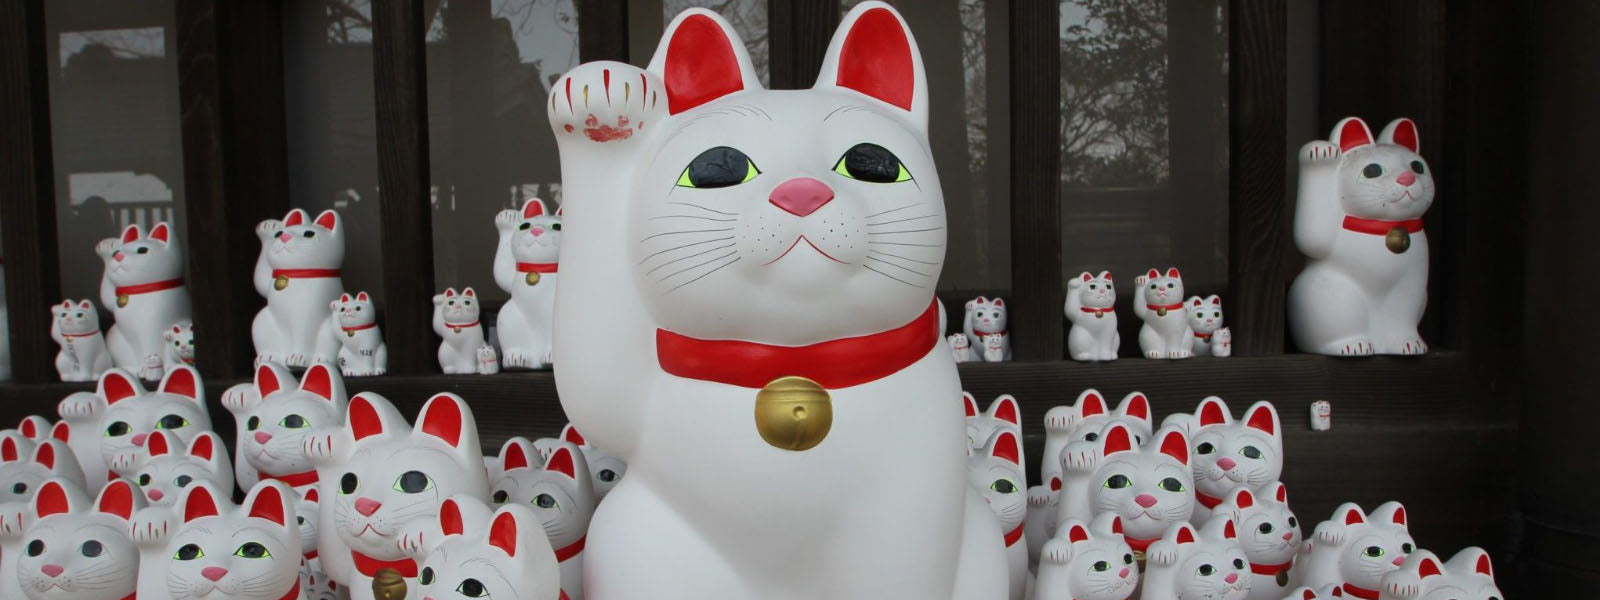 Un chat japonais, symbole de joie et de richesse, appelé maneki neko